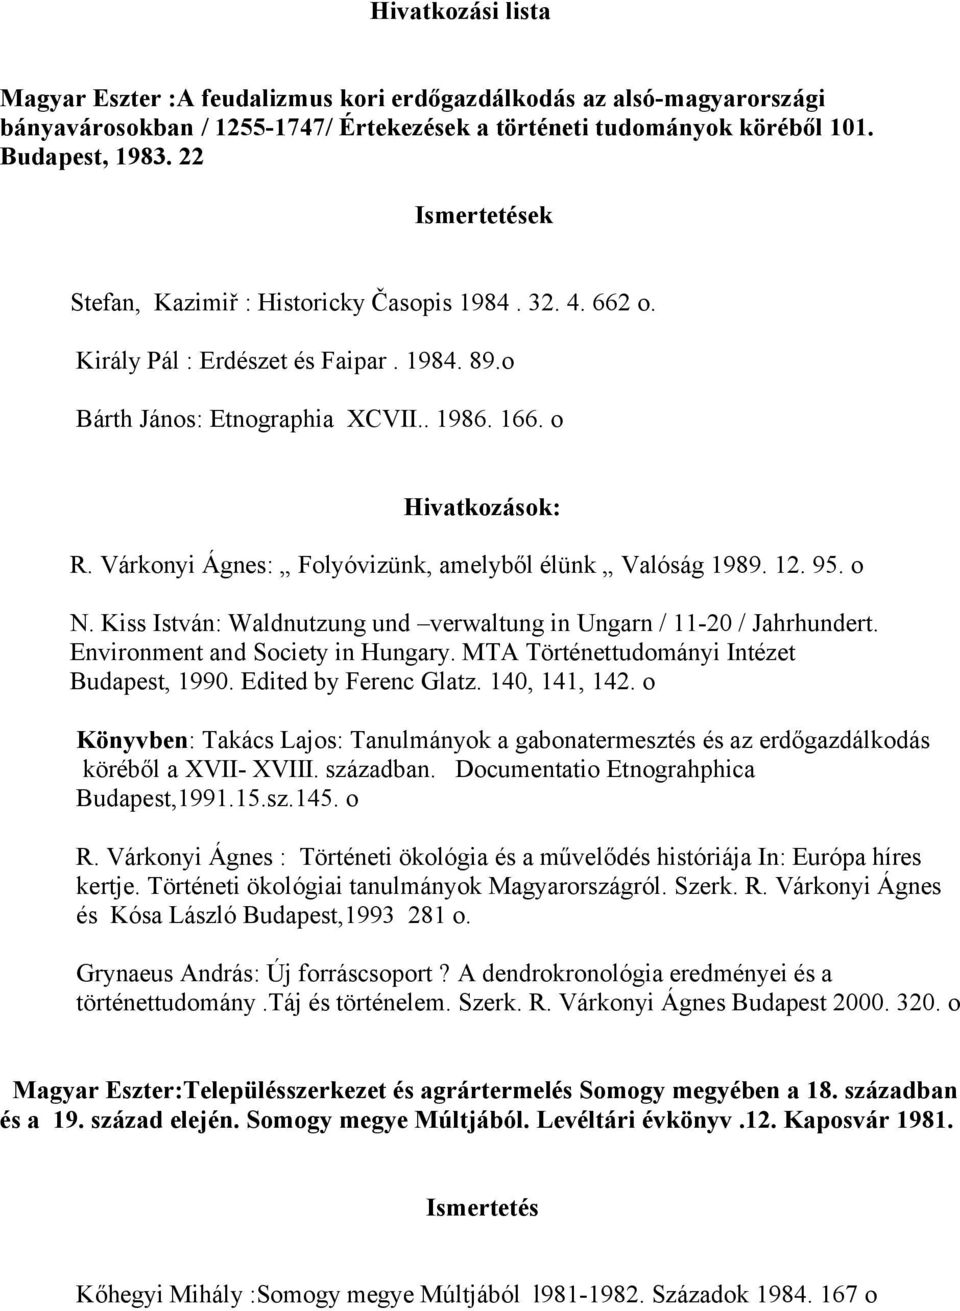 Várkonyi Ágnes: Folyóvizünk, amelyből élünk Valóság 1989. 12. 95. o N. Kiss István: Waldnutzung und verwaltung in Ungarn / 11-20 / Jahrhundert. Environment and Society in Hungary.